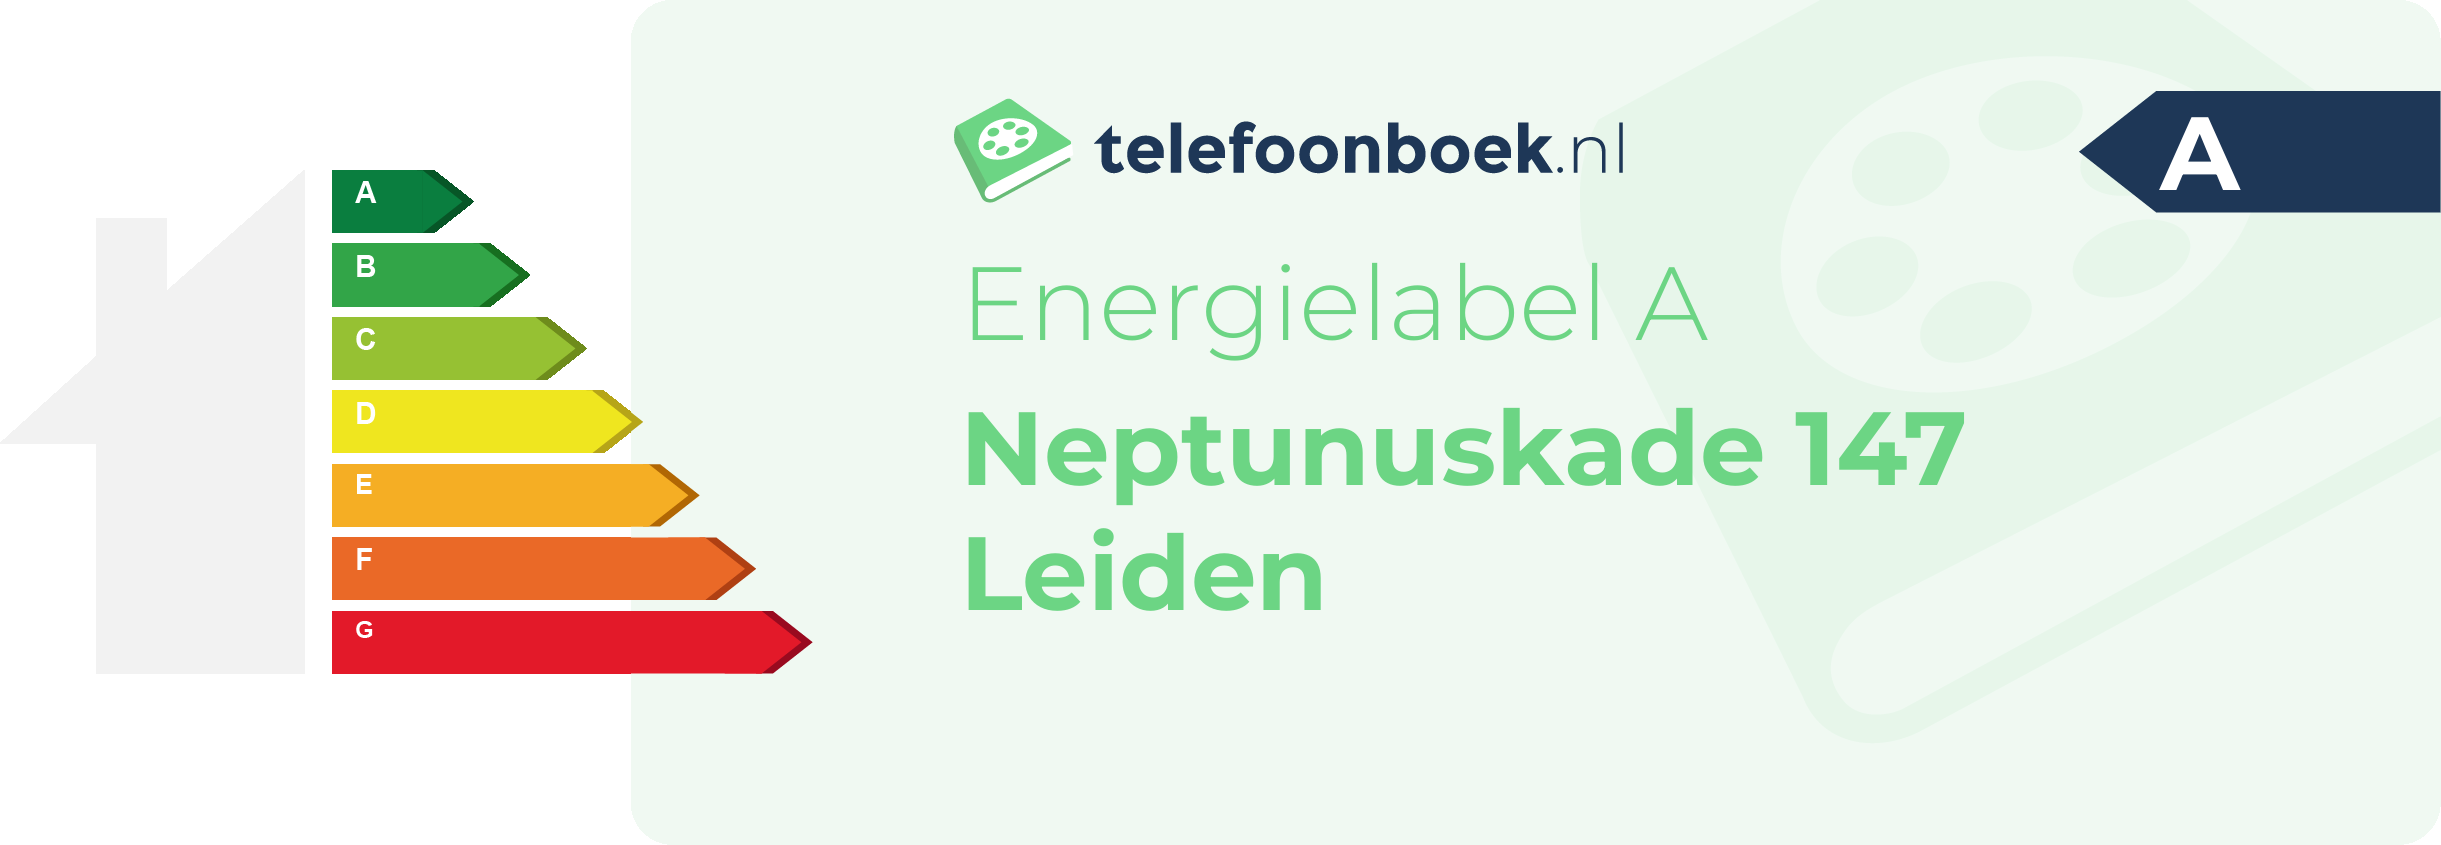 Energielabel Neptunuskade 147 Leiden